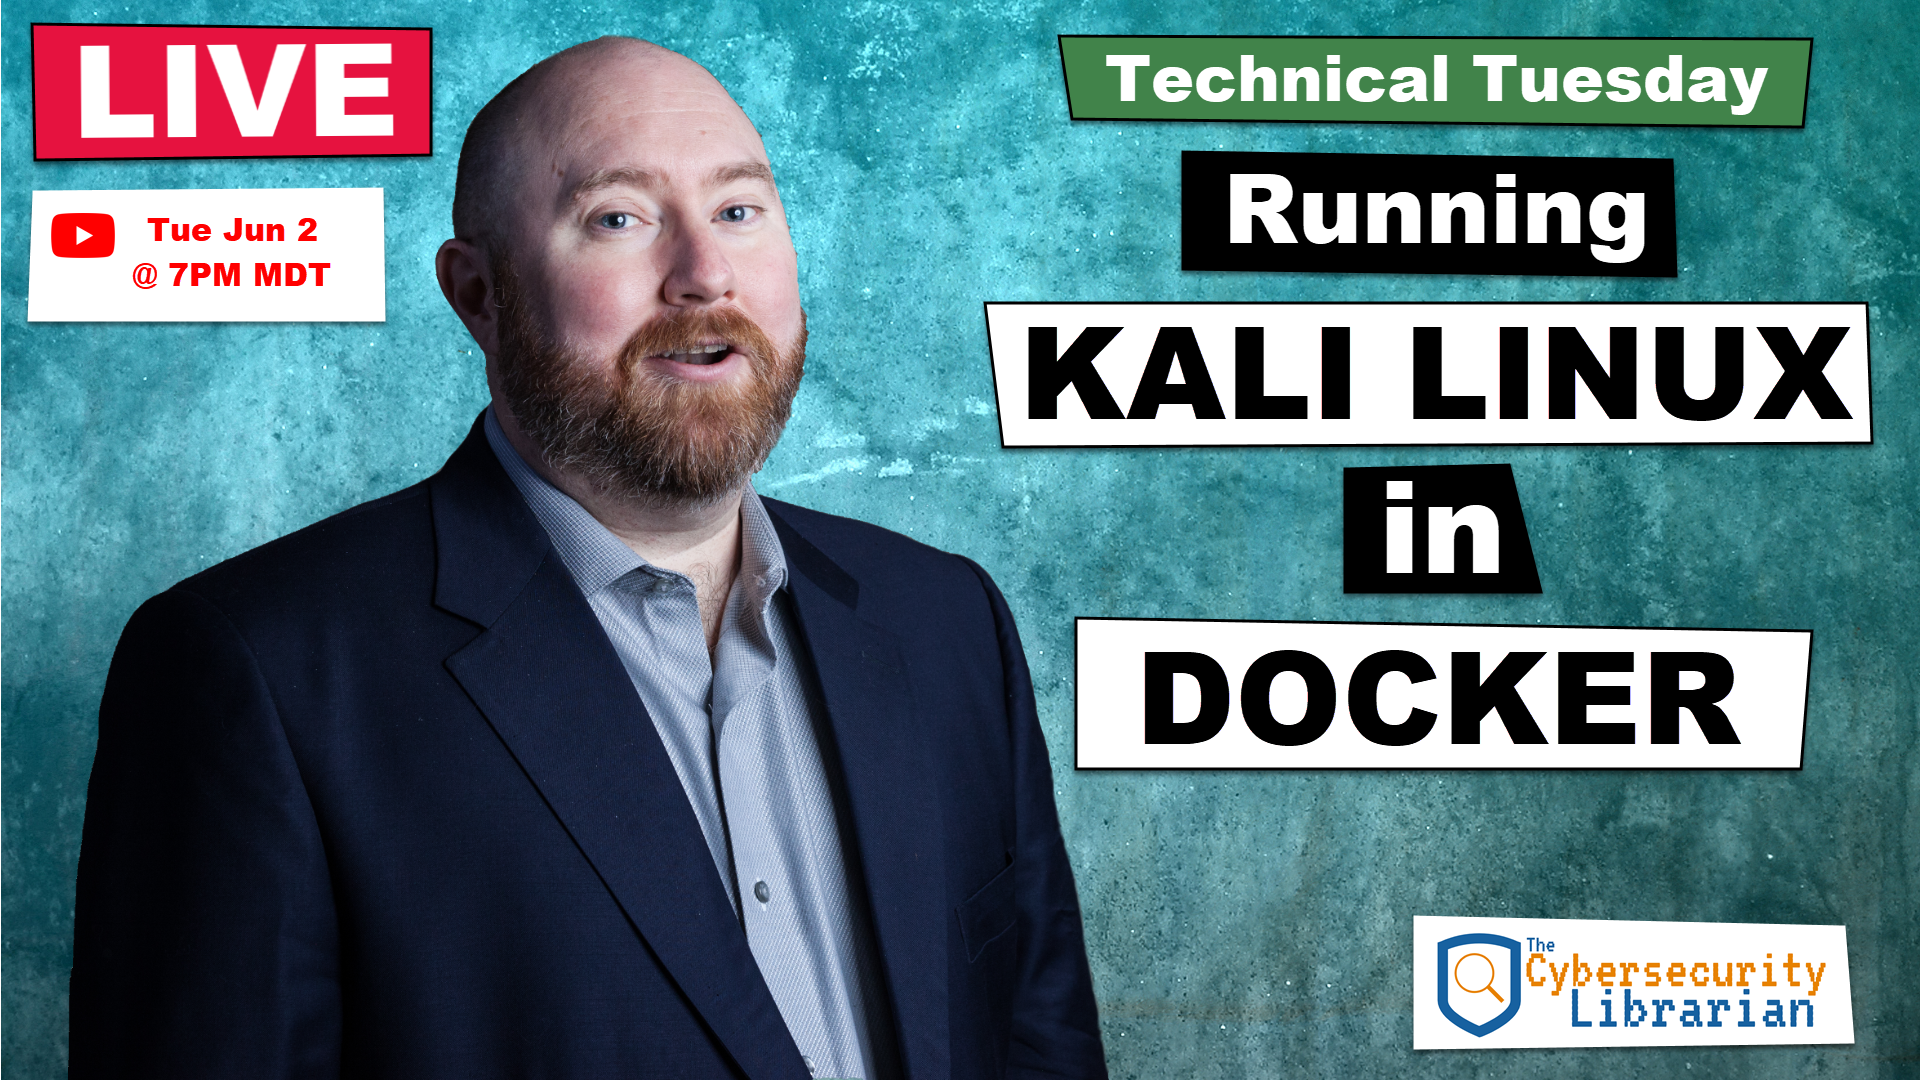 thumbnail for Kali Linux in Docker youtube video